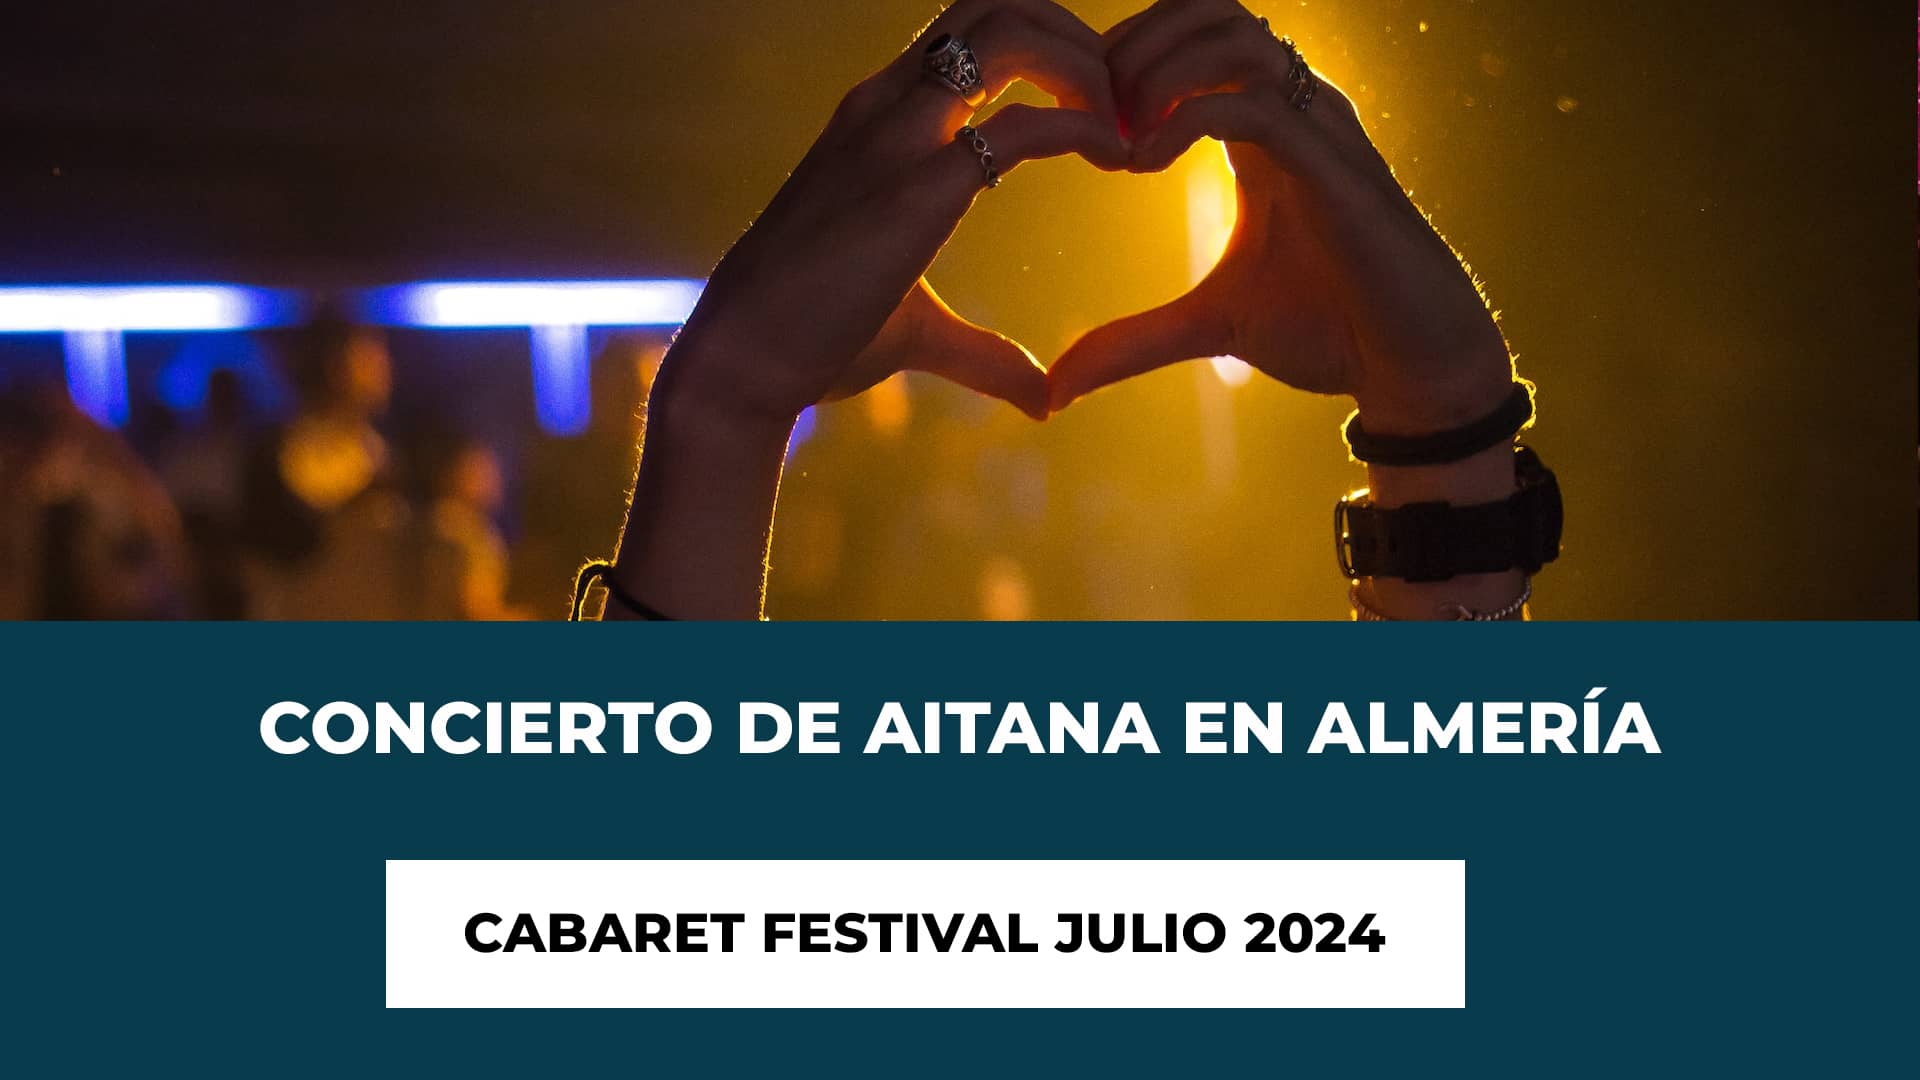 Concierto de Aitana en Almería Julio 2024 - Fecha - Recinto - Horario - Precio de las Entradas - Cabaret Festival - Política de Menores